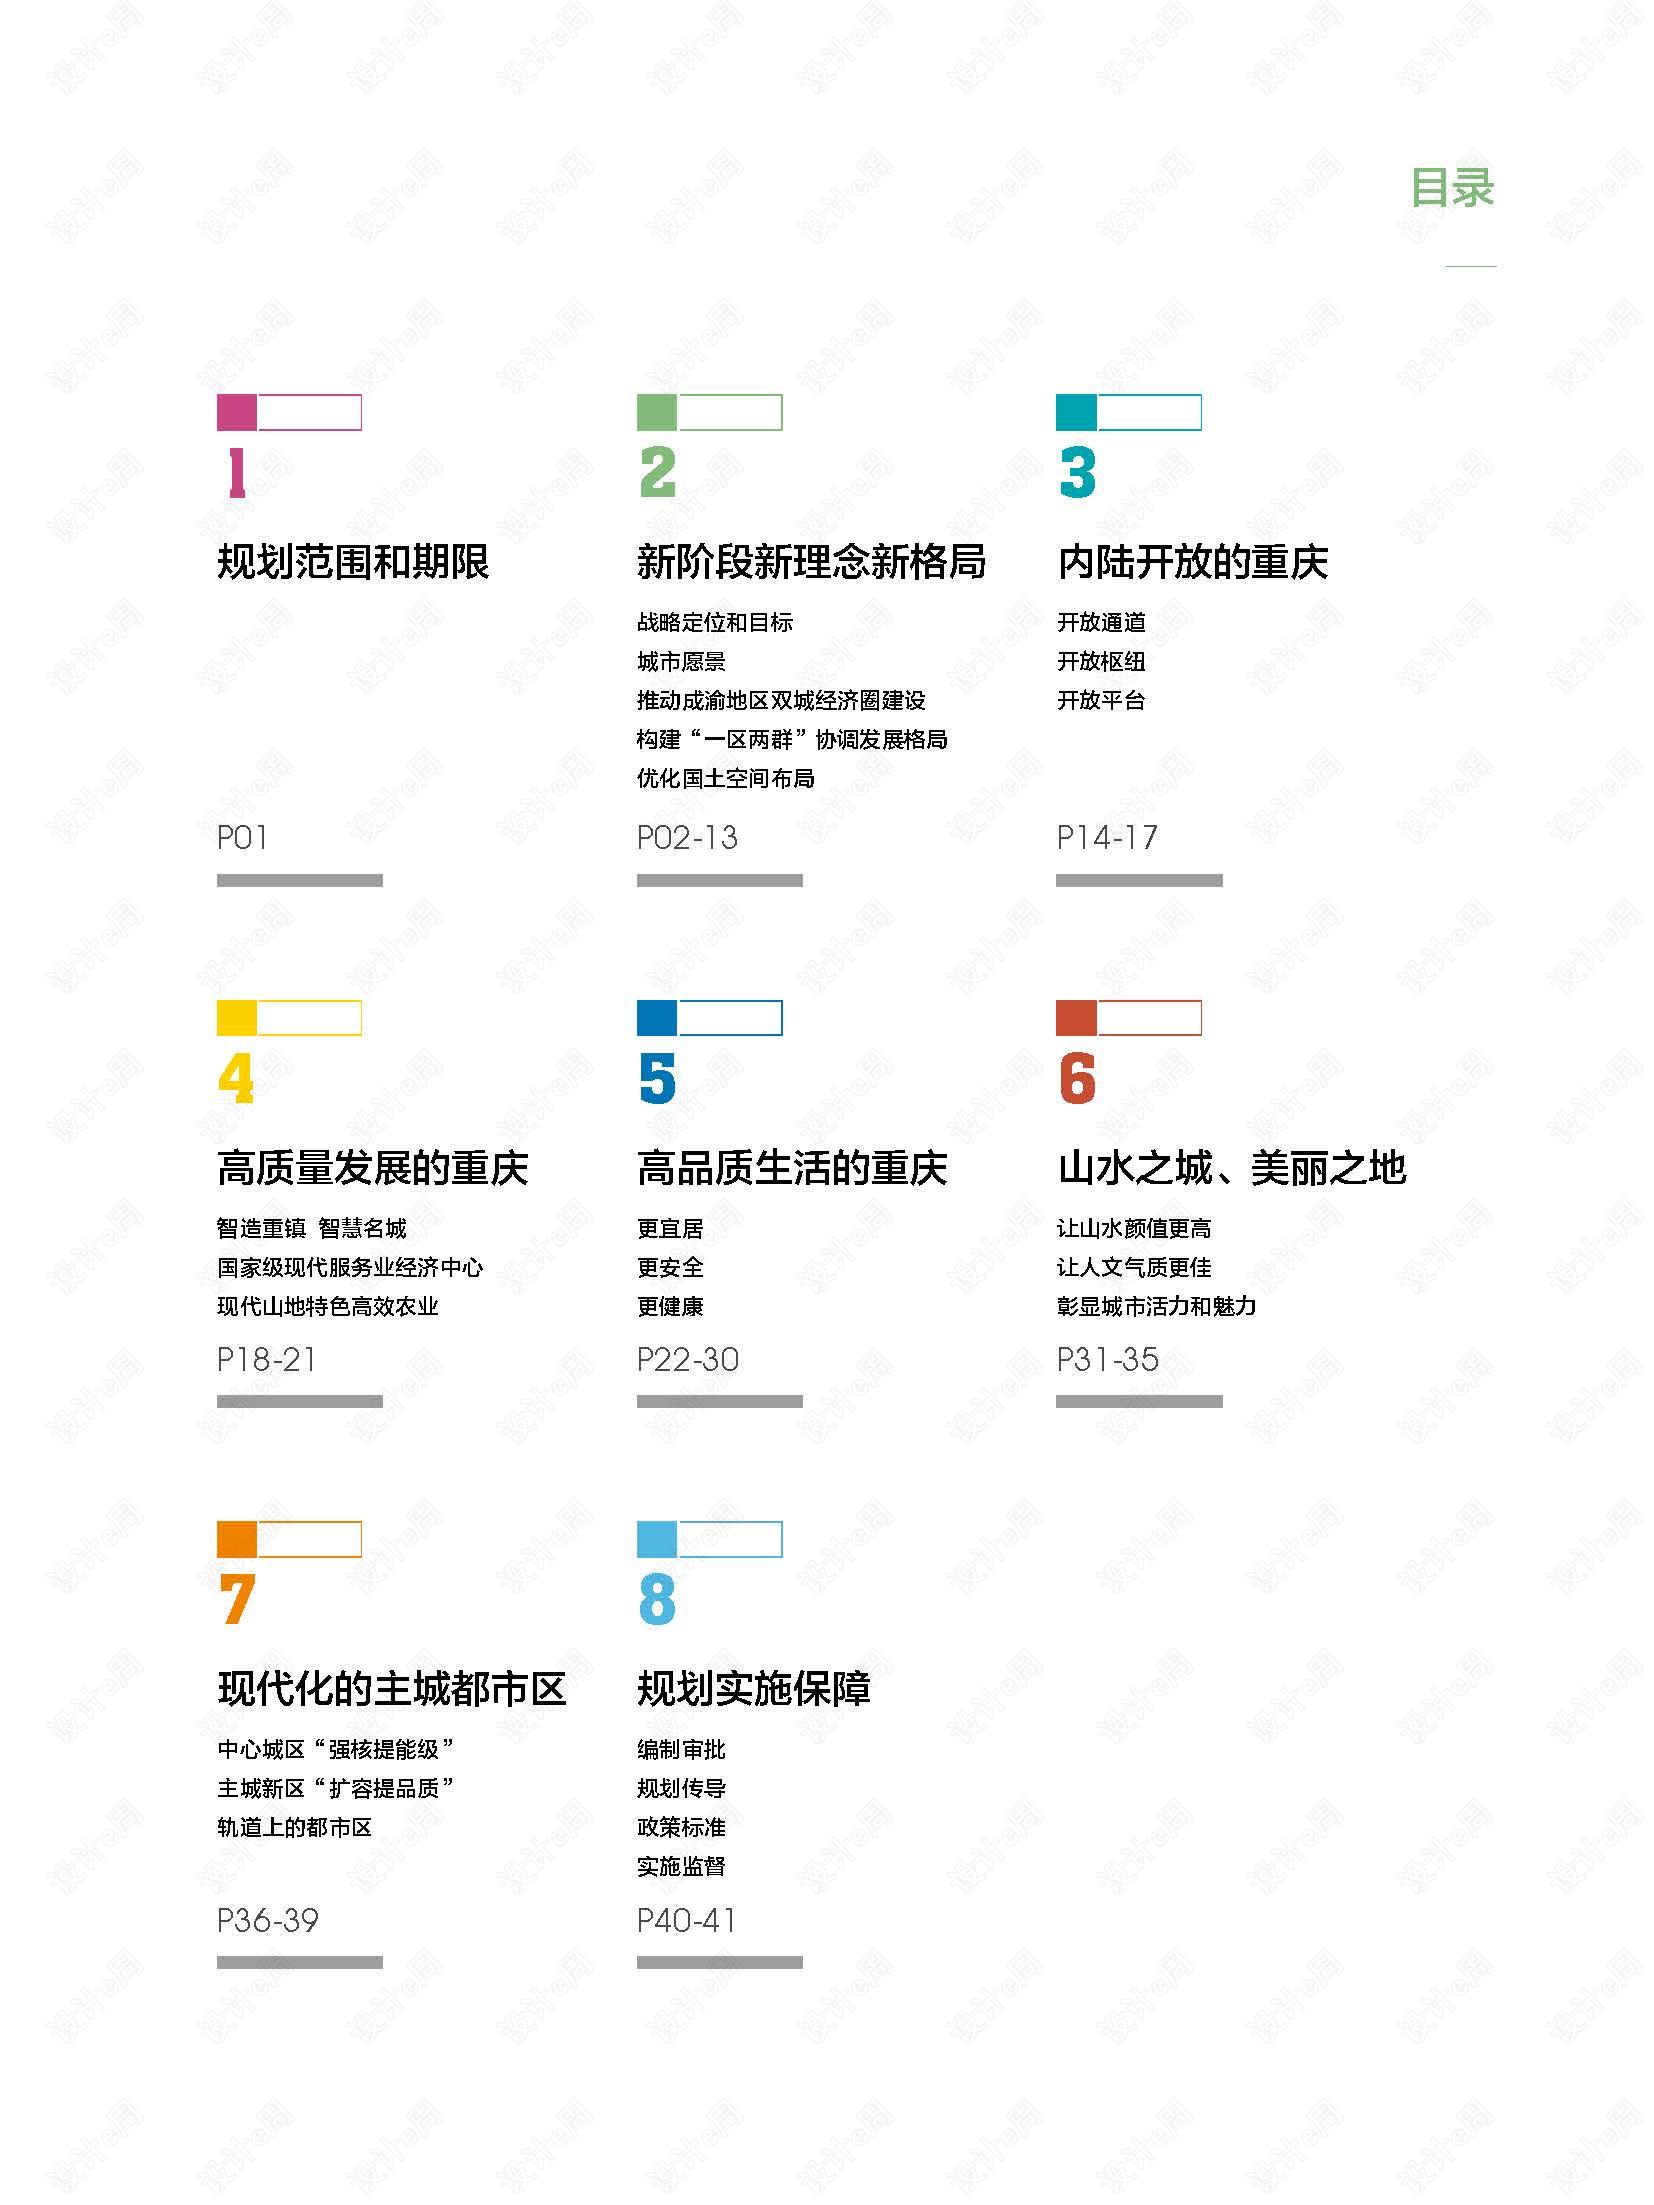 《重庆市国土空间总体规划(2021—2035年)》_页面_04.jpg